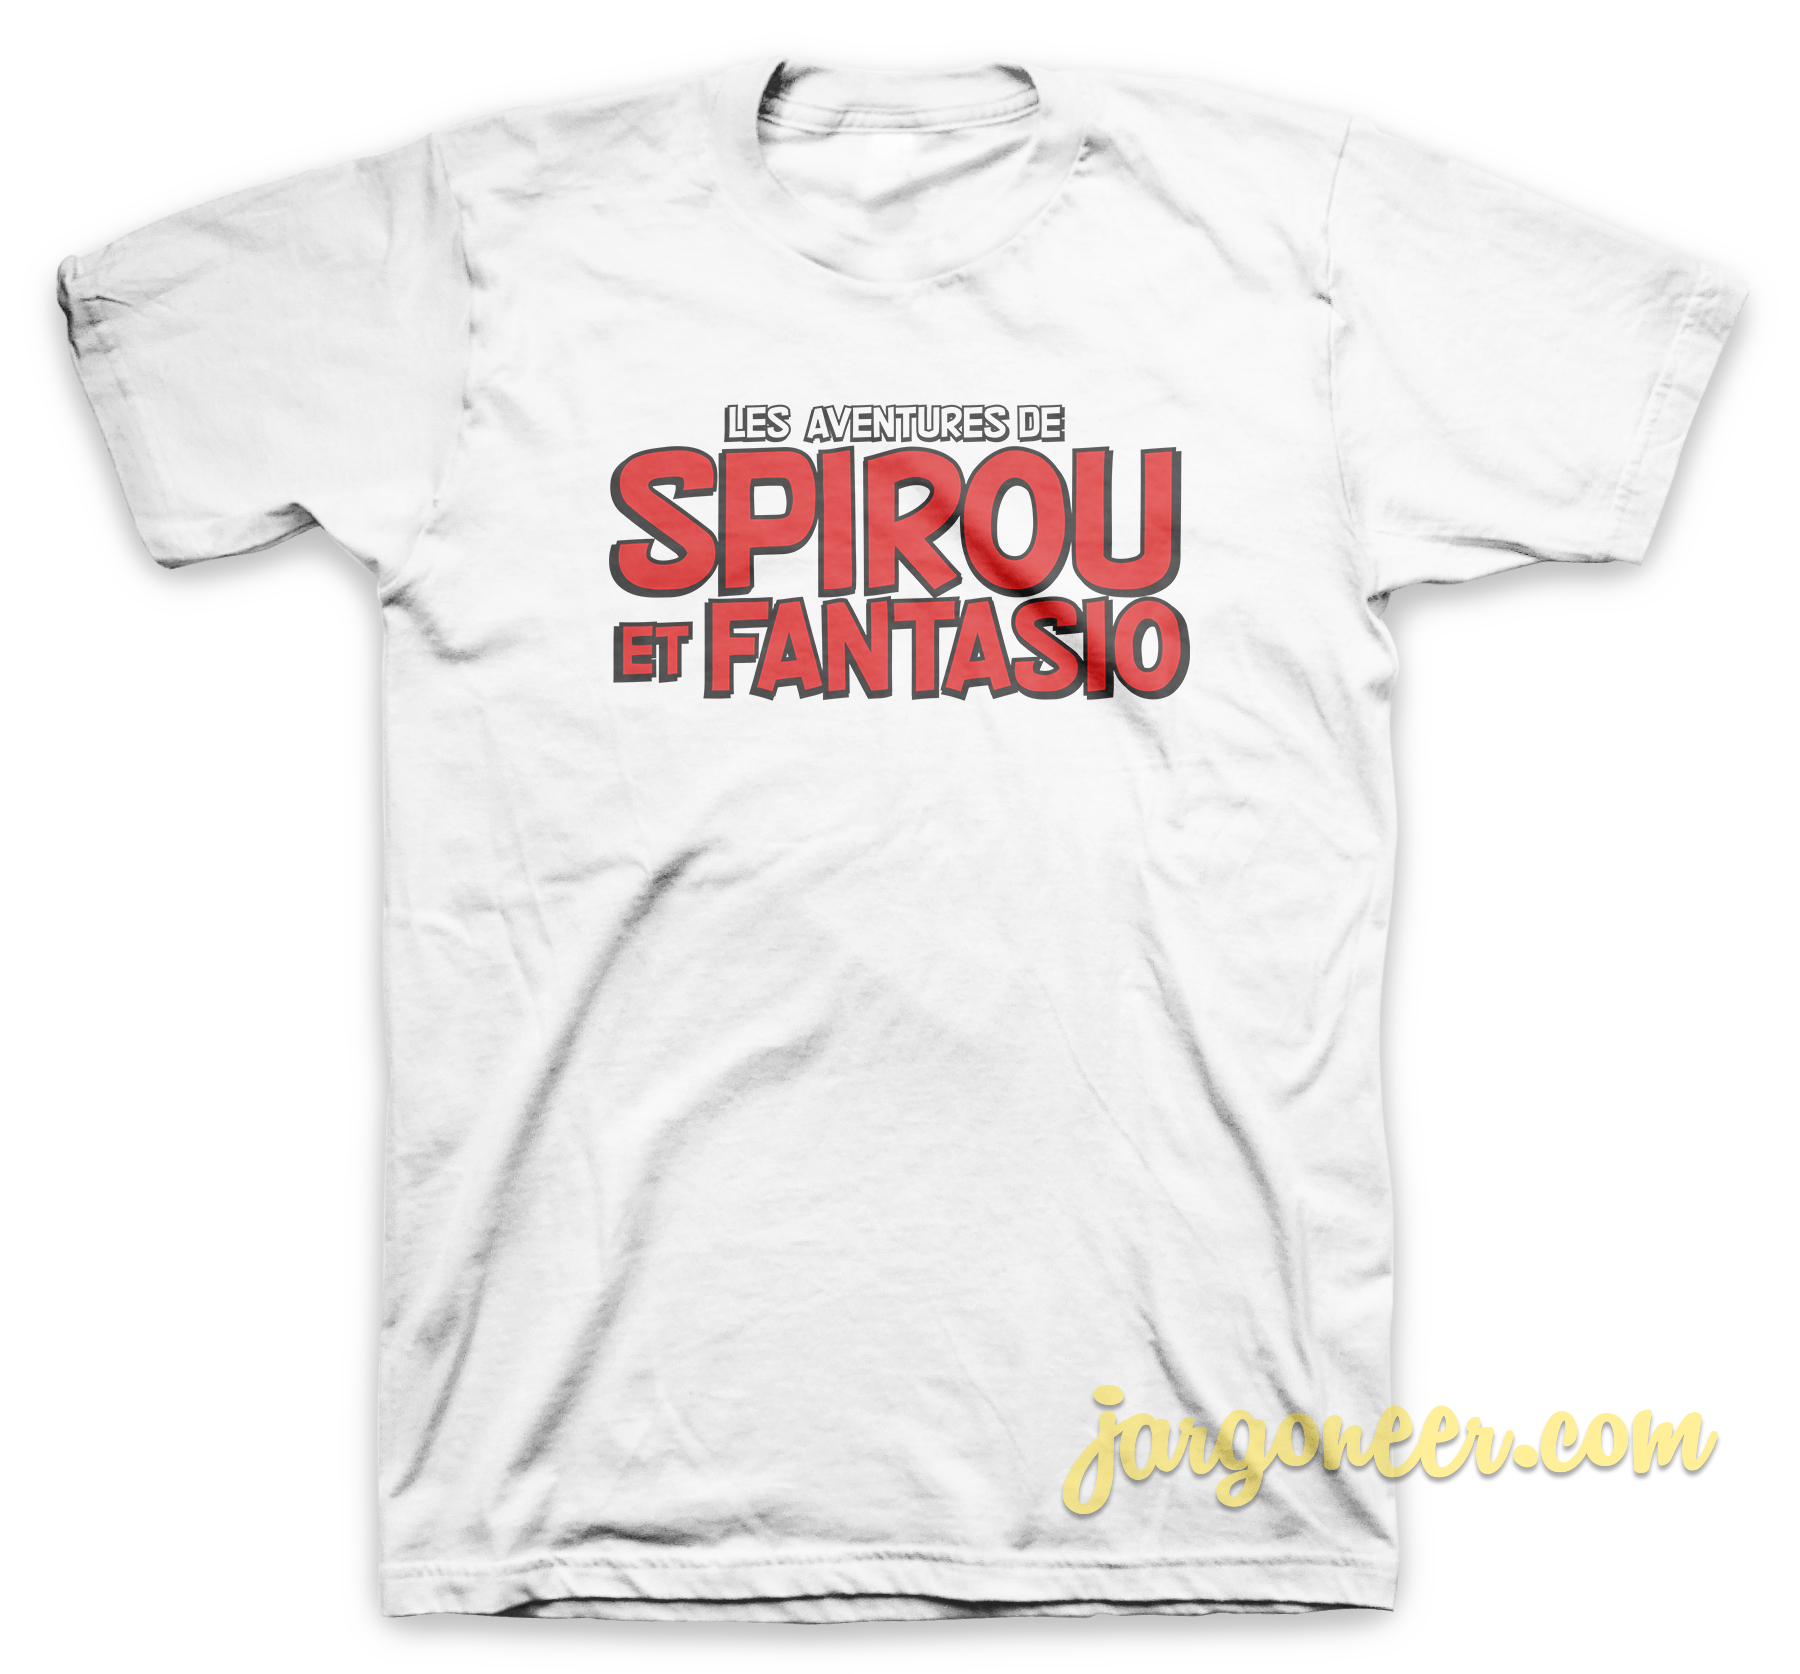 Spirou et Fantasio Logo White T Shirt - Shop Unique Graphic Cool Shirt Designs